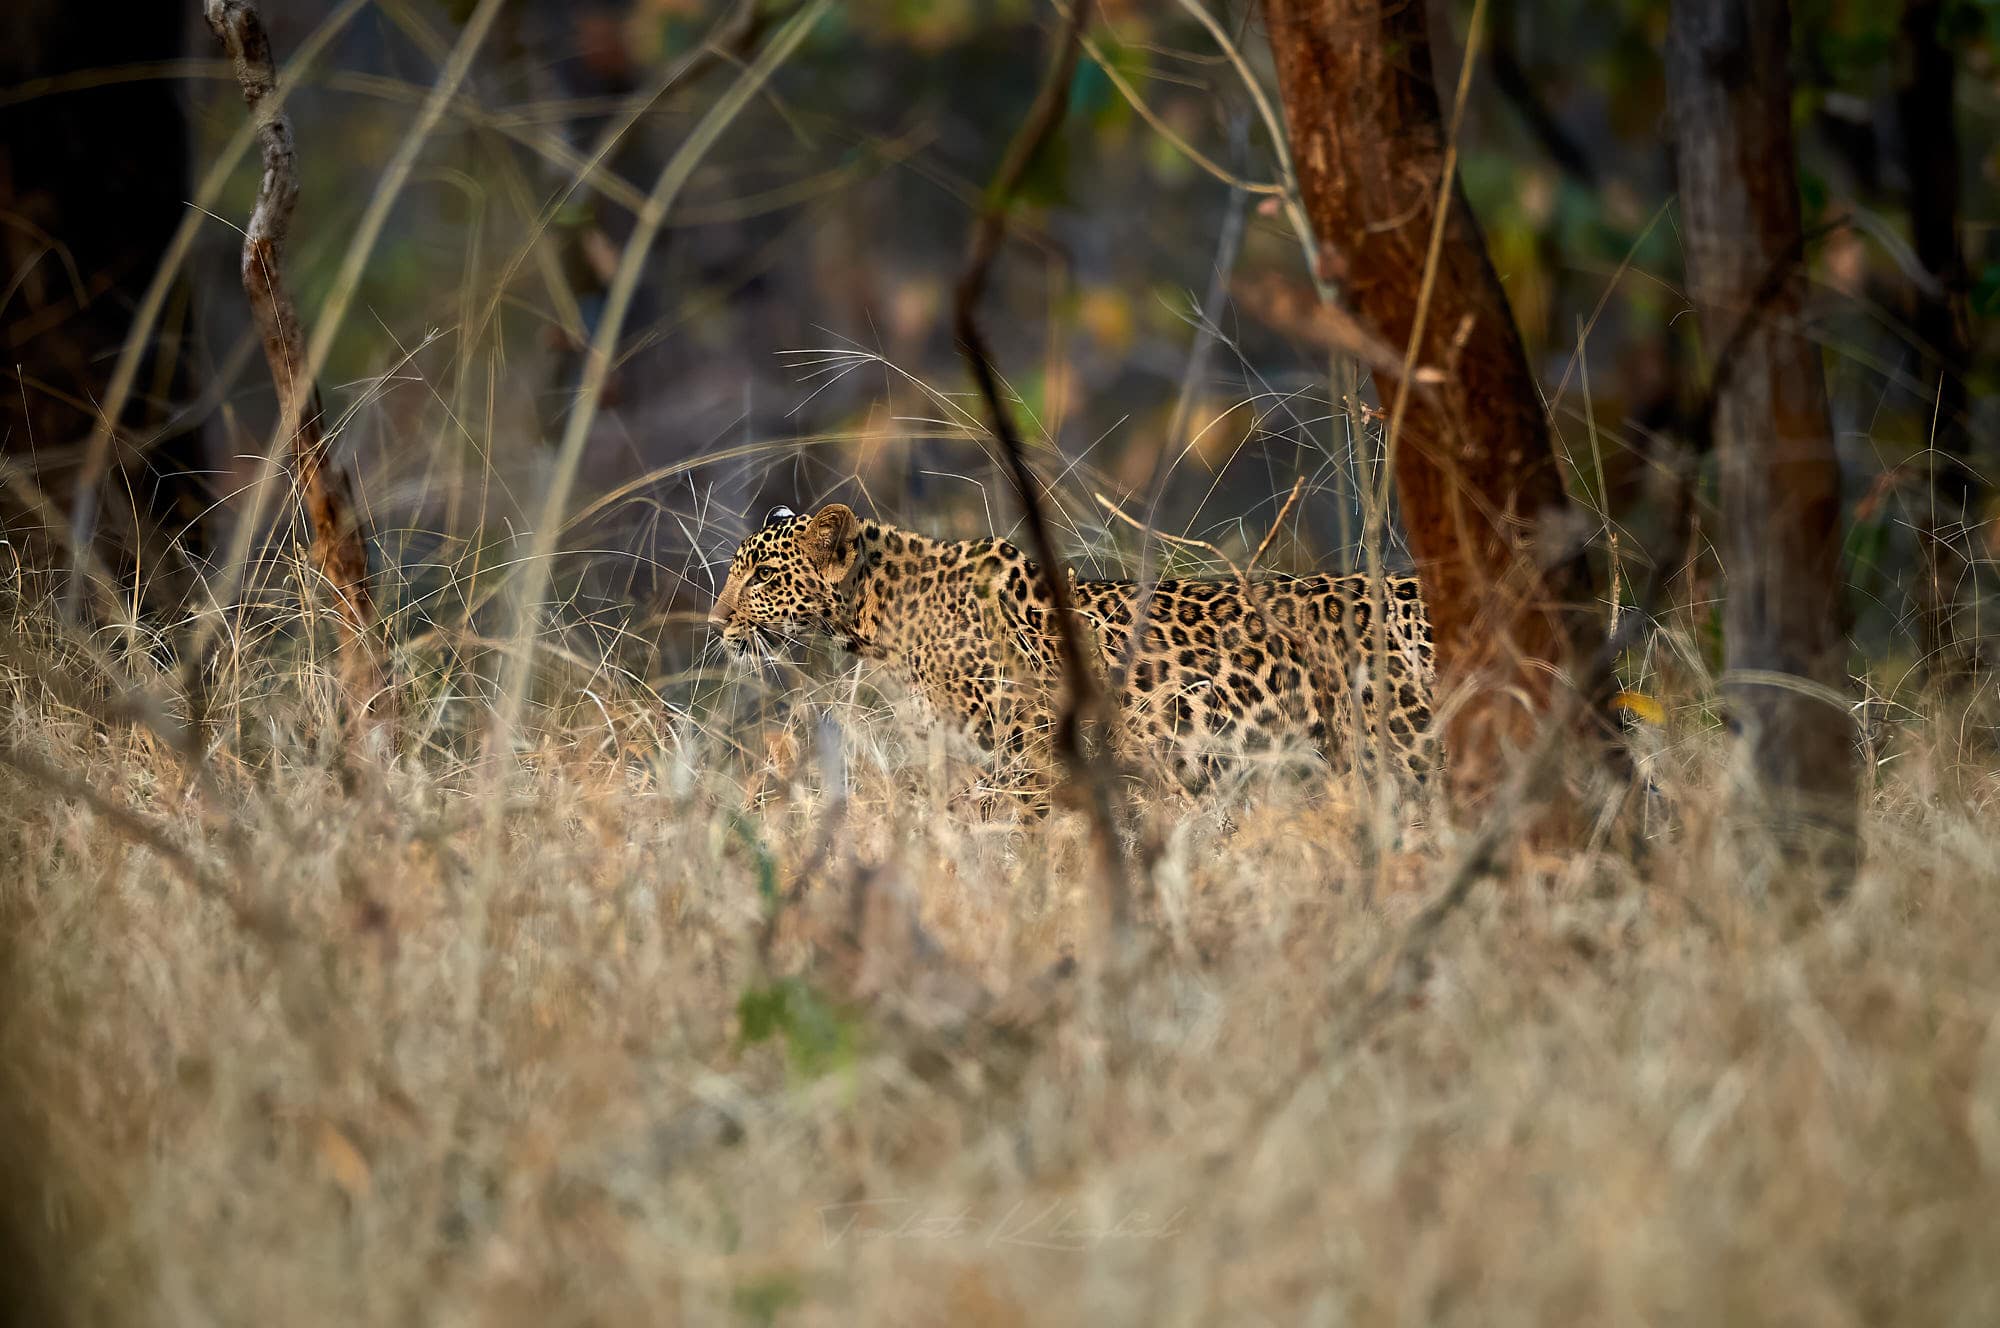 Pench Tiger Safari - Leopard in Grass